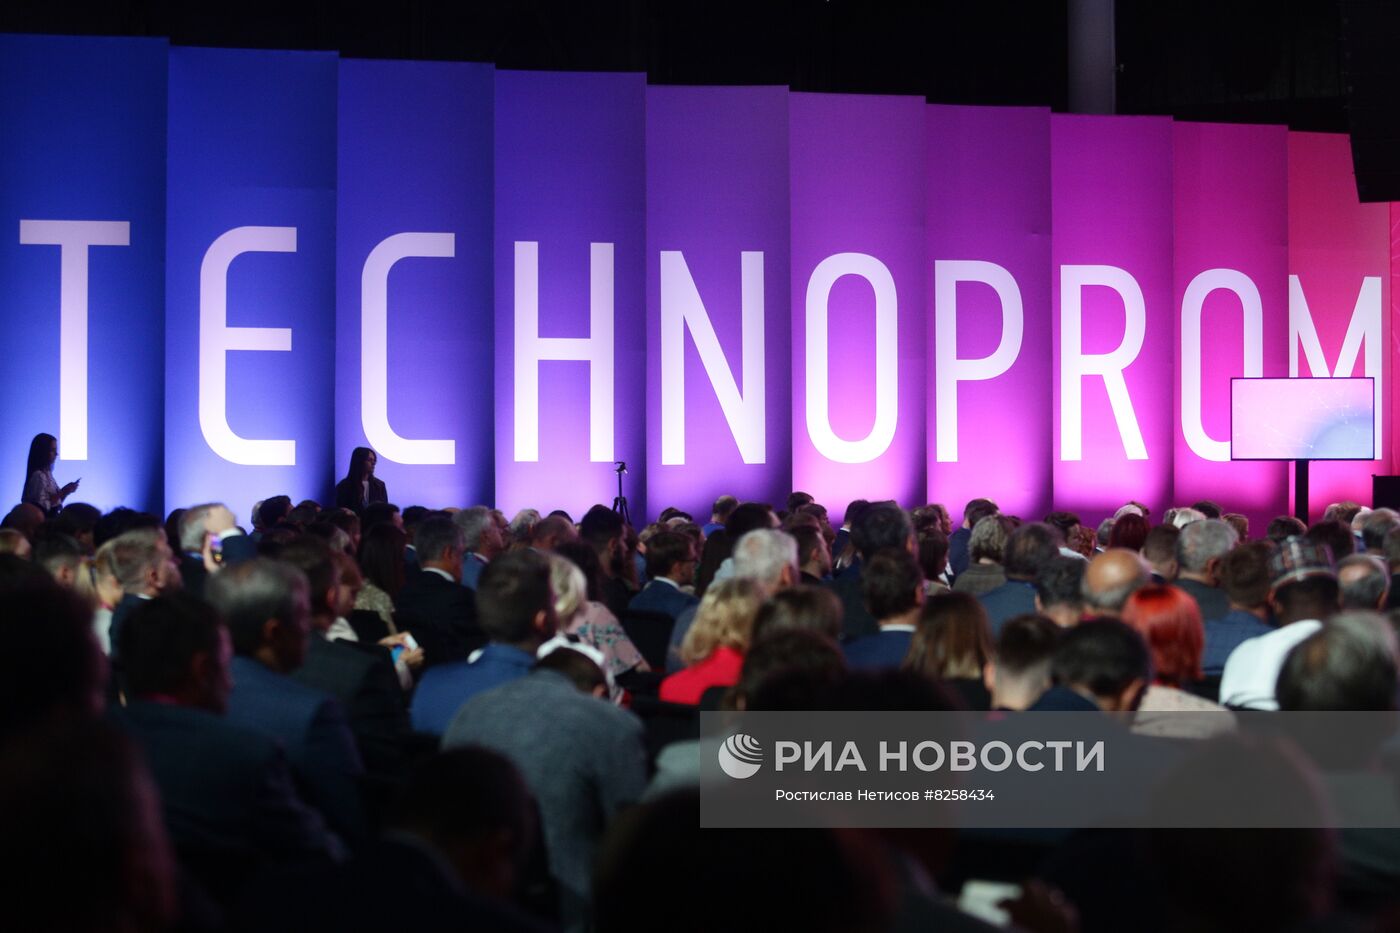 IX Международный форум технологического развития "ТЕХНОПРОМ-2022"